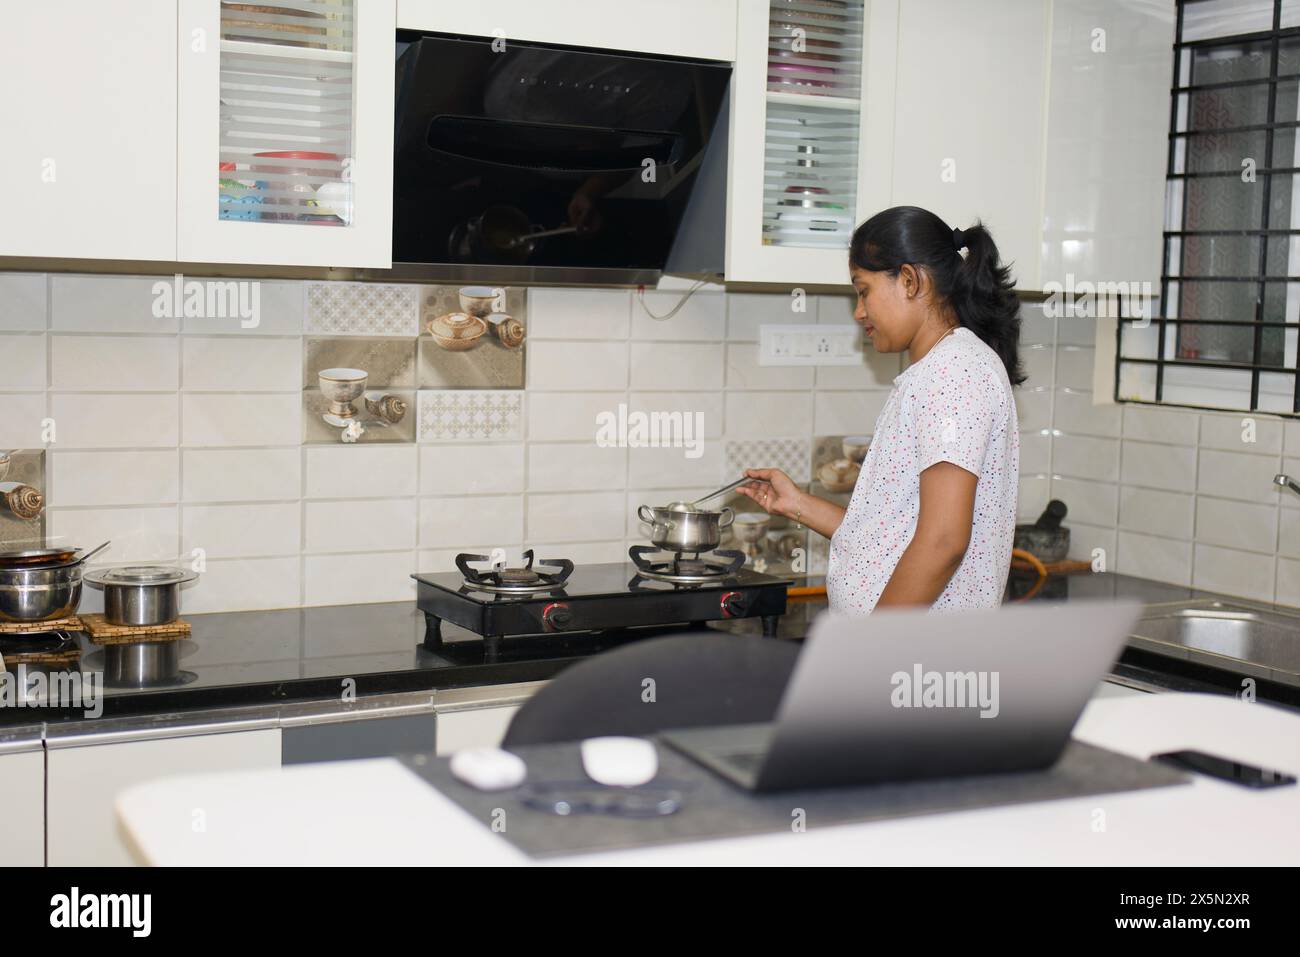 Eine fokussierte junge Frau kocht effizient eine Mahlzeit in ihrer Küche, während sie auf ein Rezept oder eine Anleitung auf ihrem Laptop verweist. Stift Funke Stockfoto